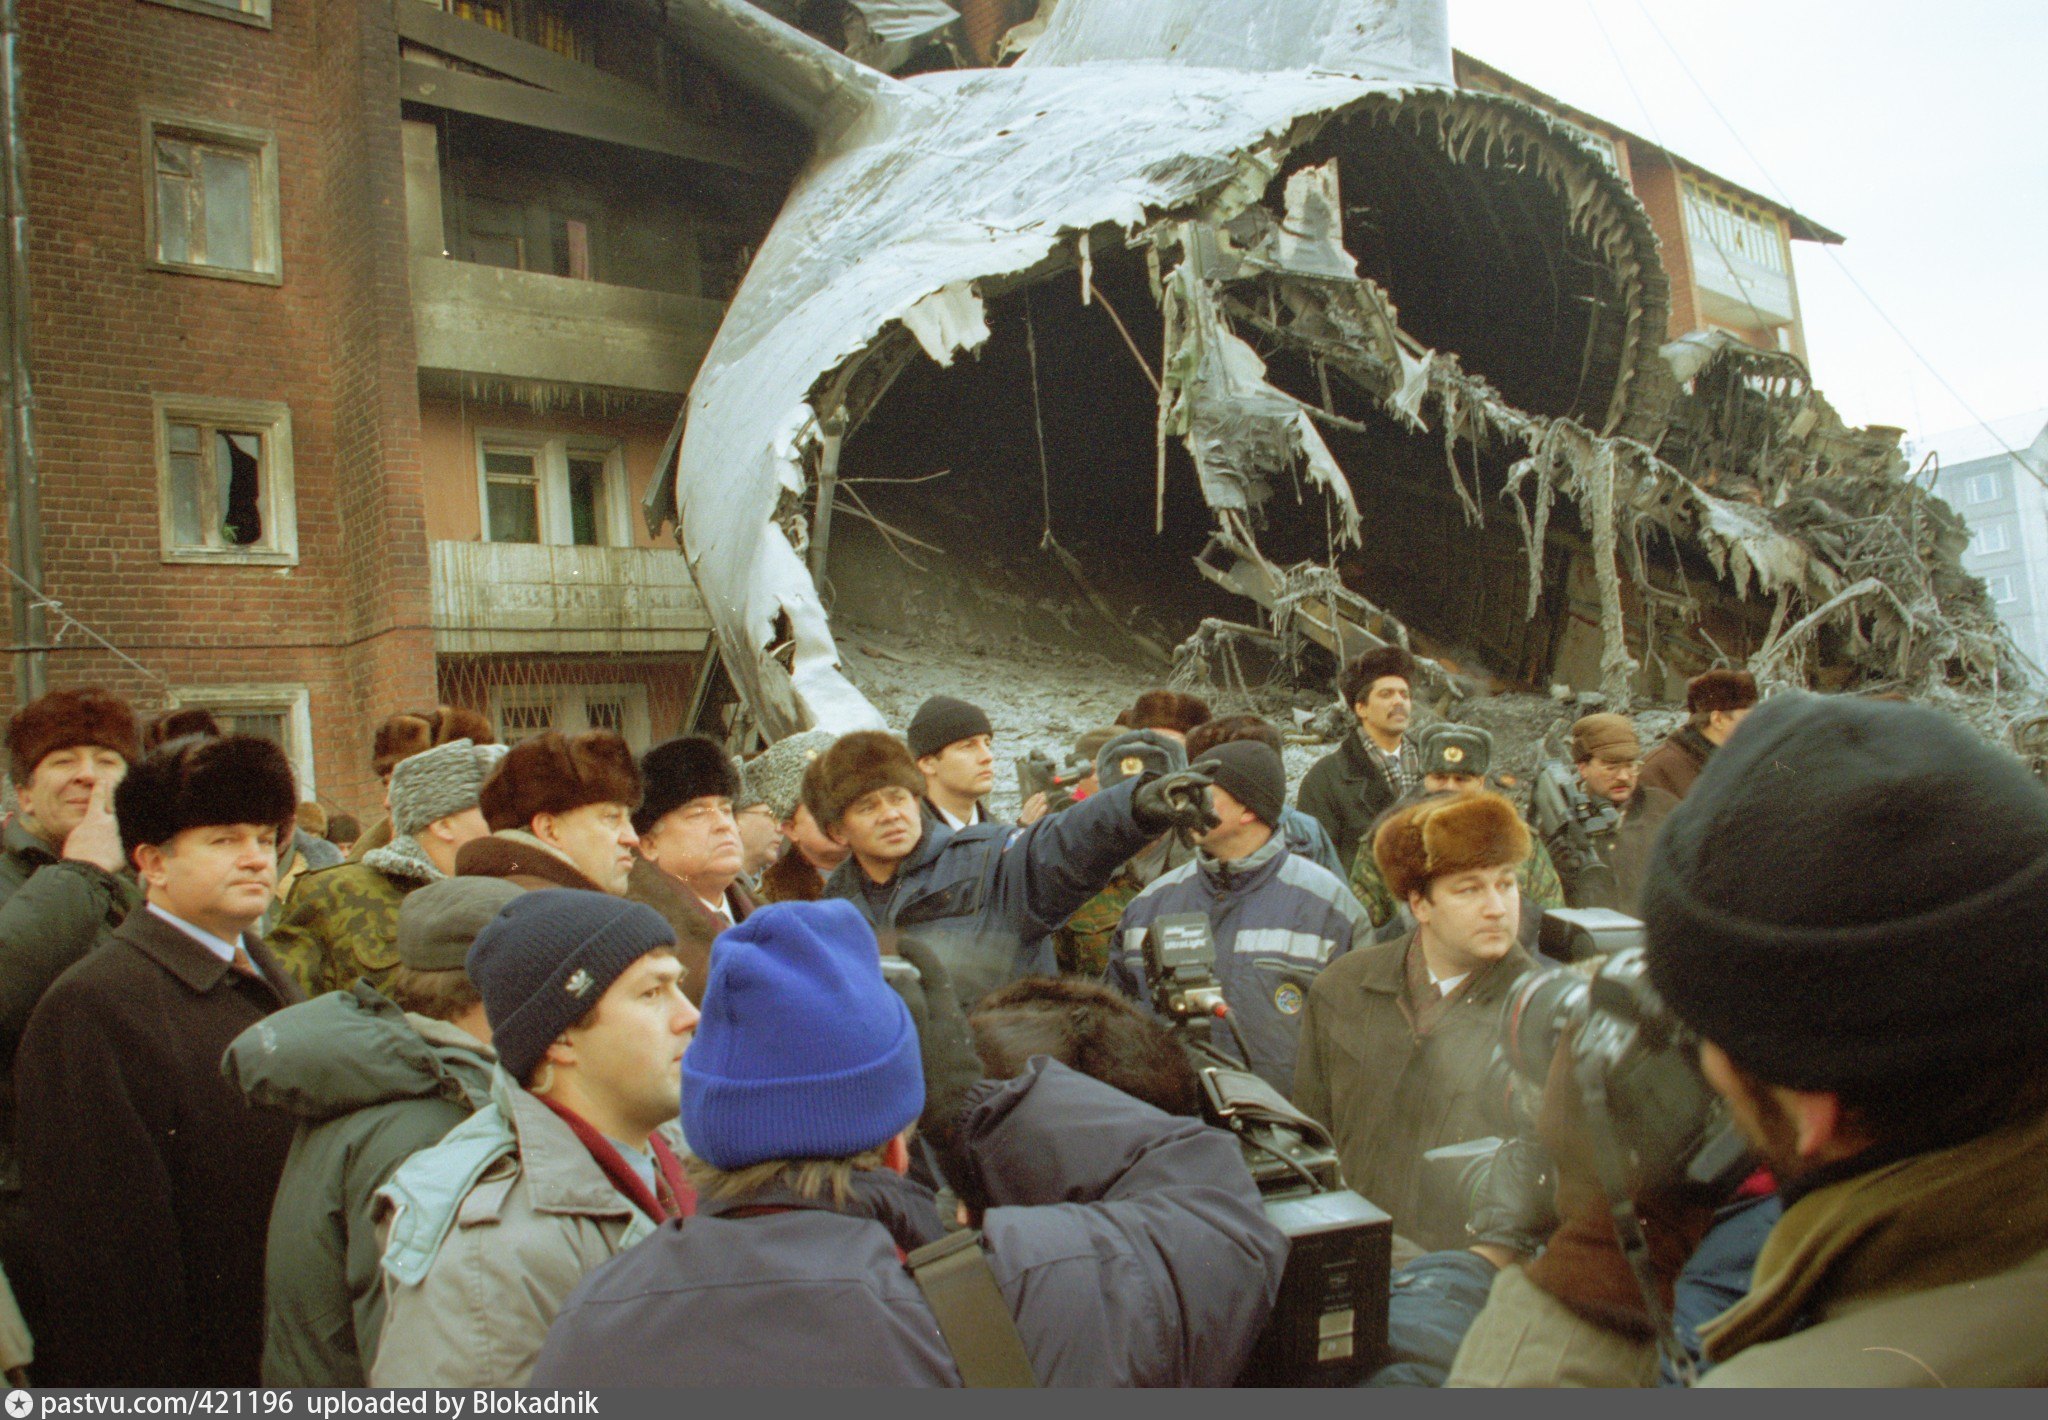 21 декабря 1996 о дополнительных. Катастрофа АН-124 В Иркутске. 6 Декабря 1997 авиакатастрофа АН-124 В Иркутске.